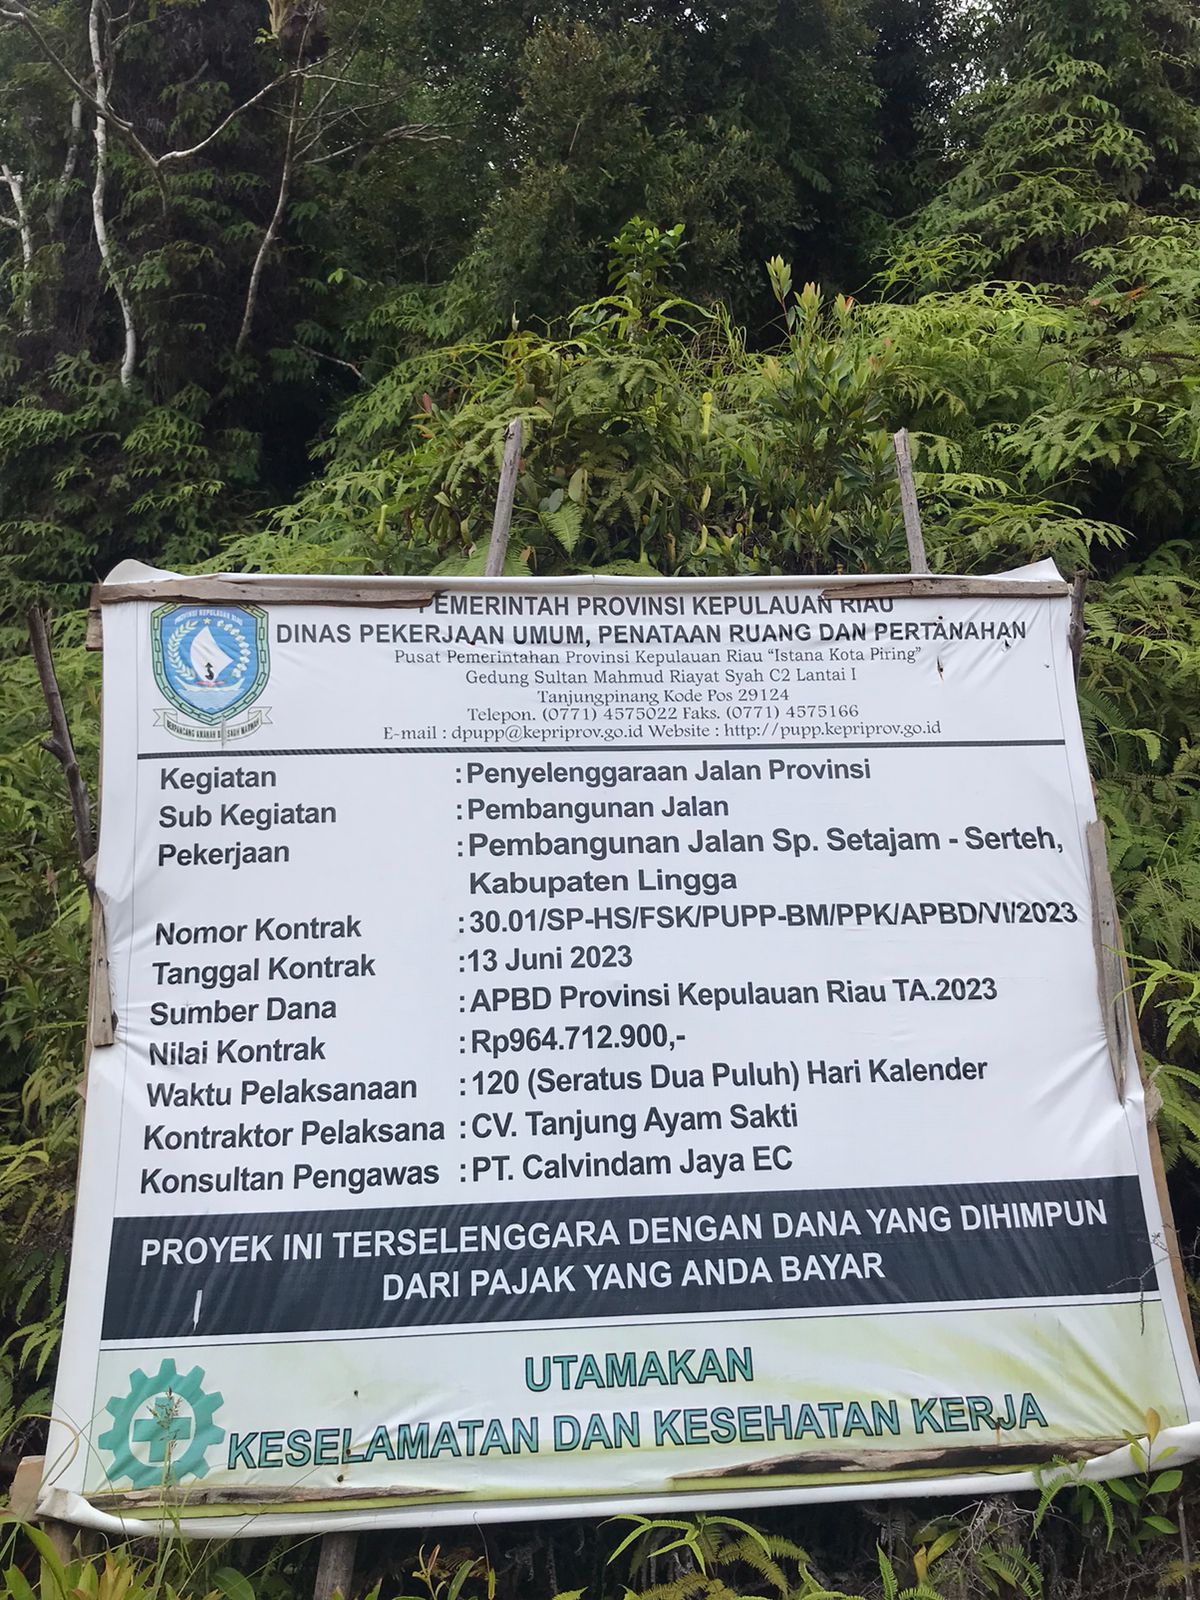 Pemerintah Provinsi Kepri Dimana? Jalan Rusak di Dusun Serteh Lingga Banyak Makan Korban